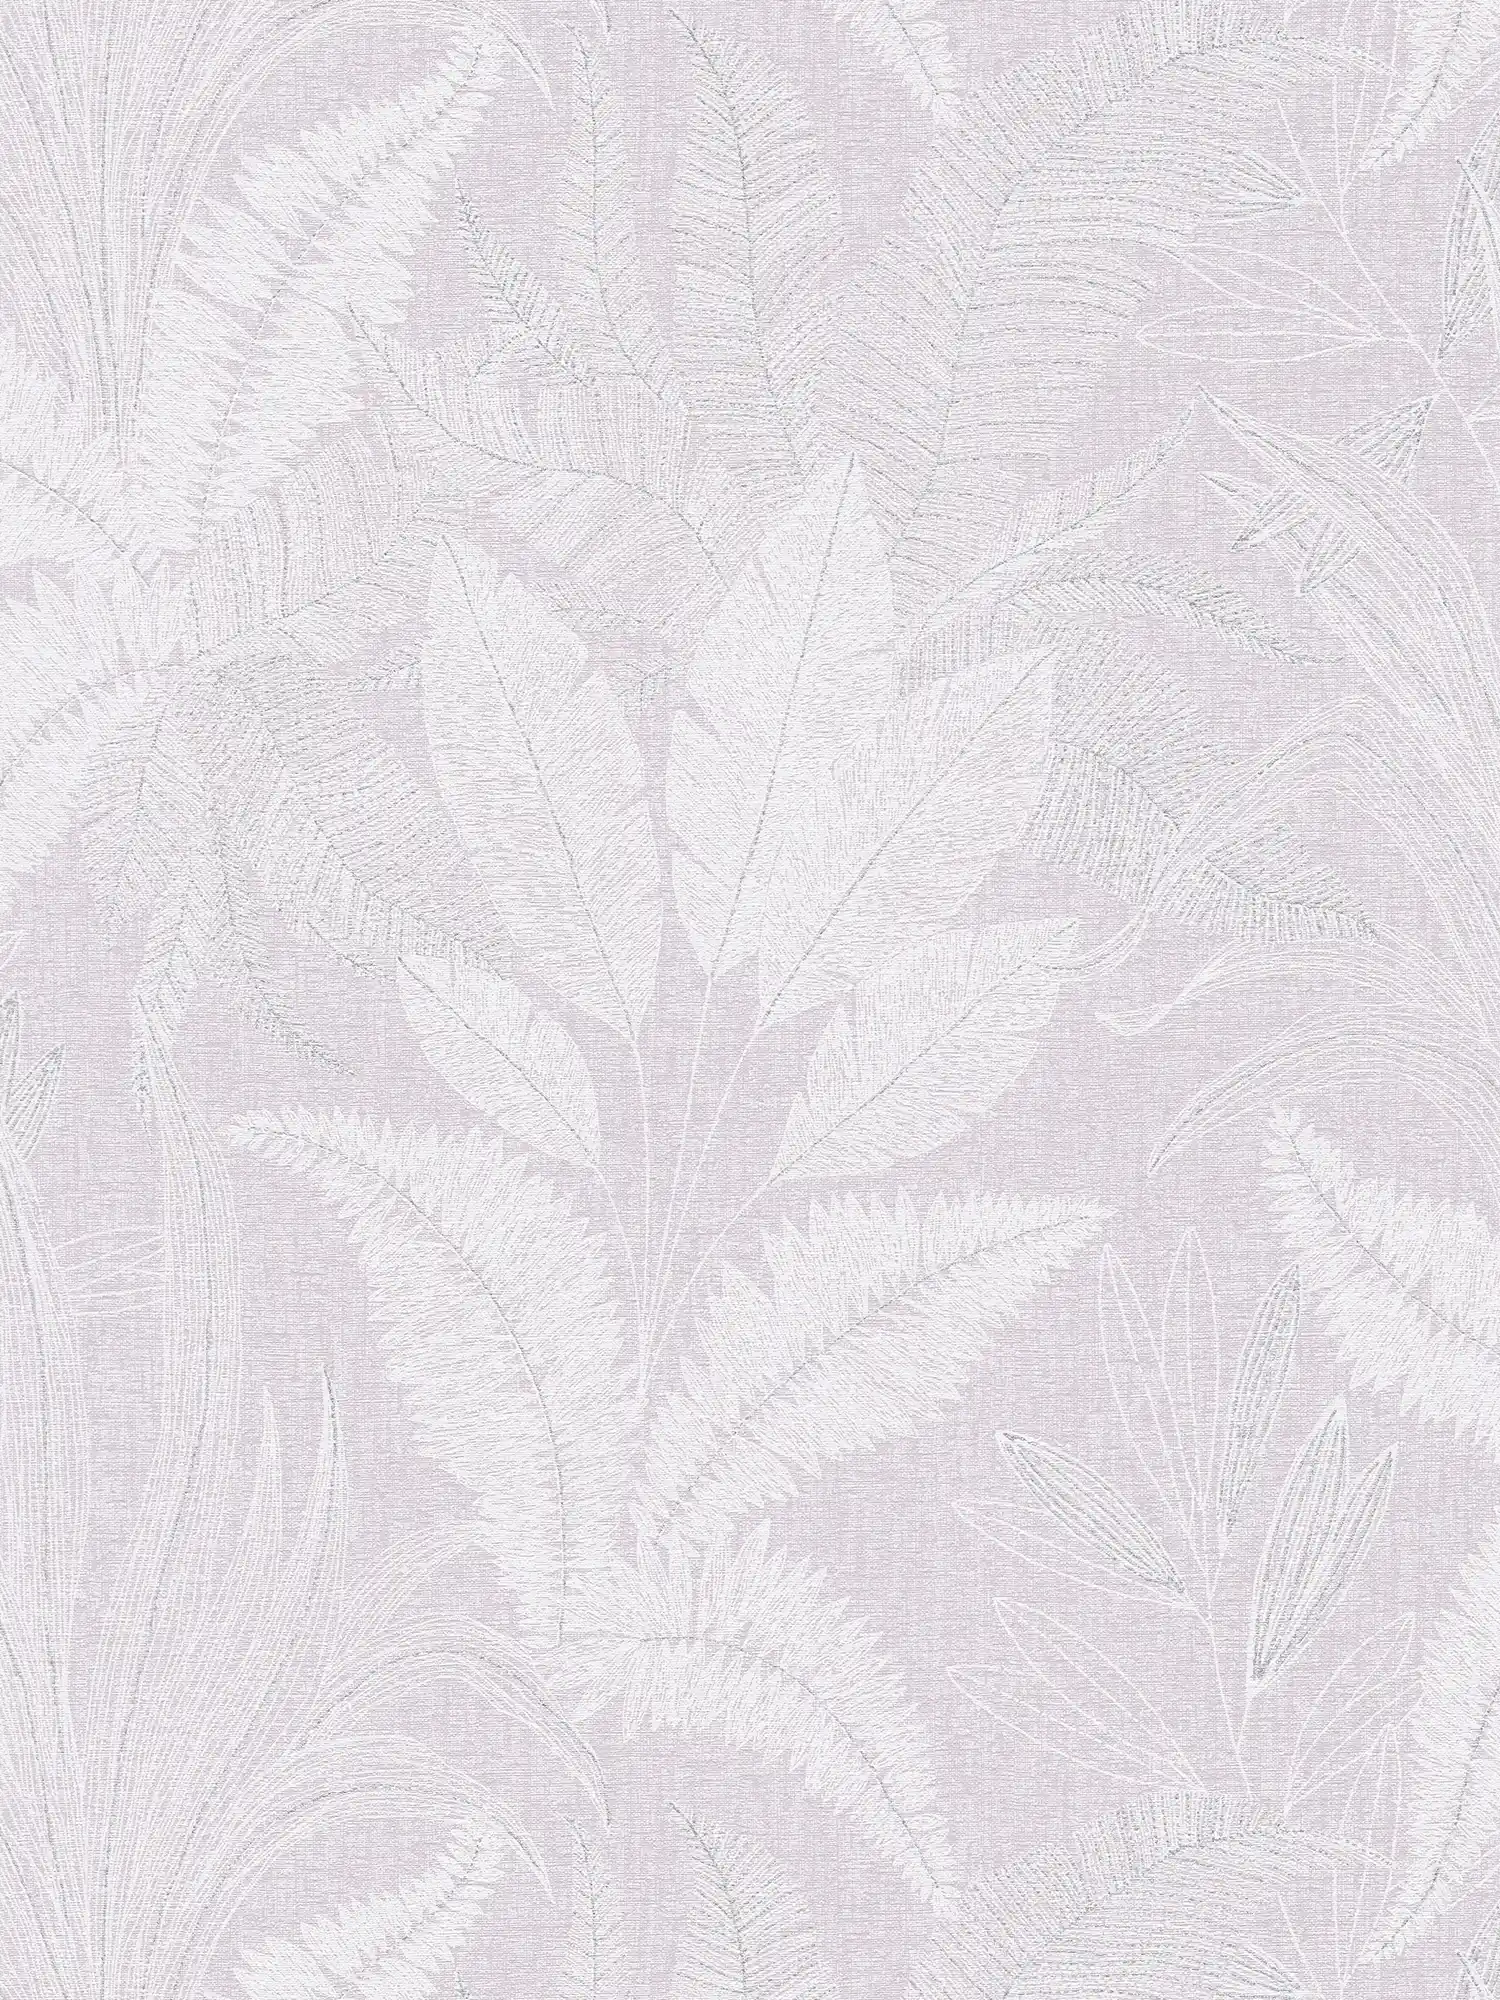 Carta da parati non tessuta con motivo a grandi foglie leggermente strutturato - viola, bianco, grigio
